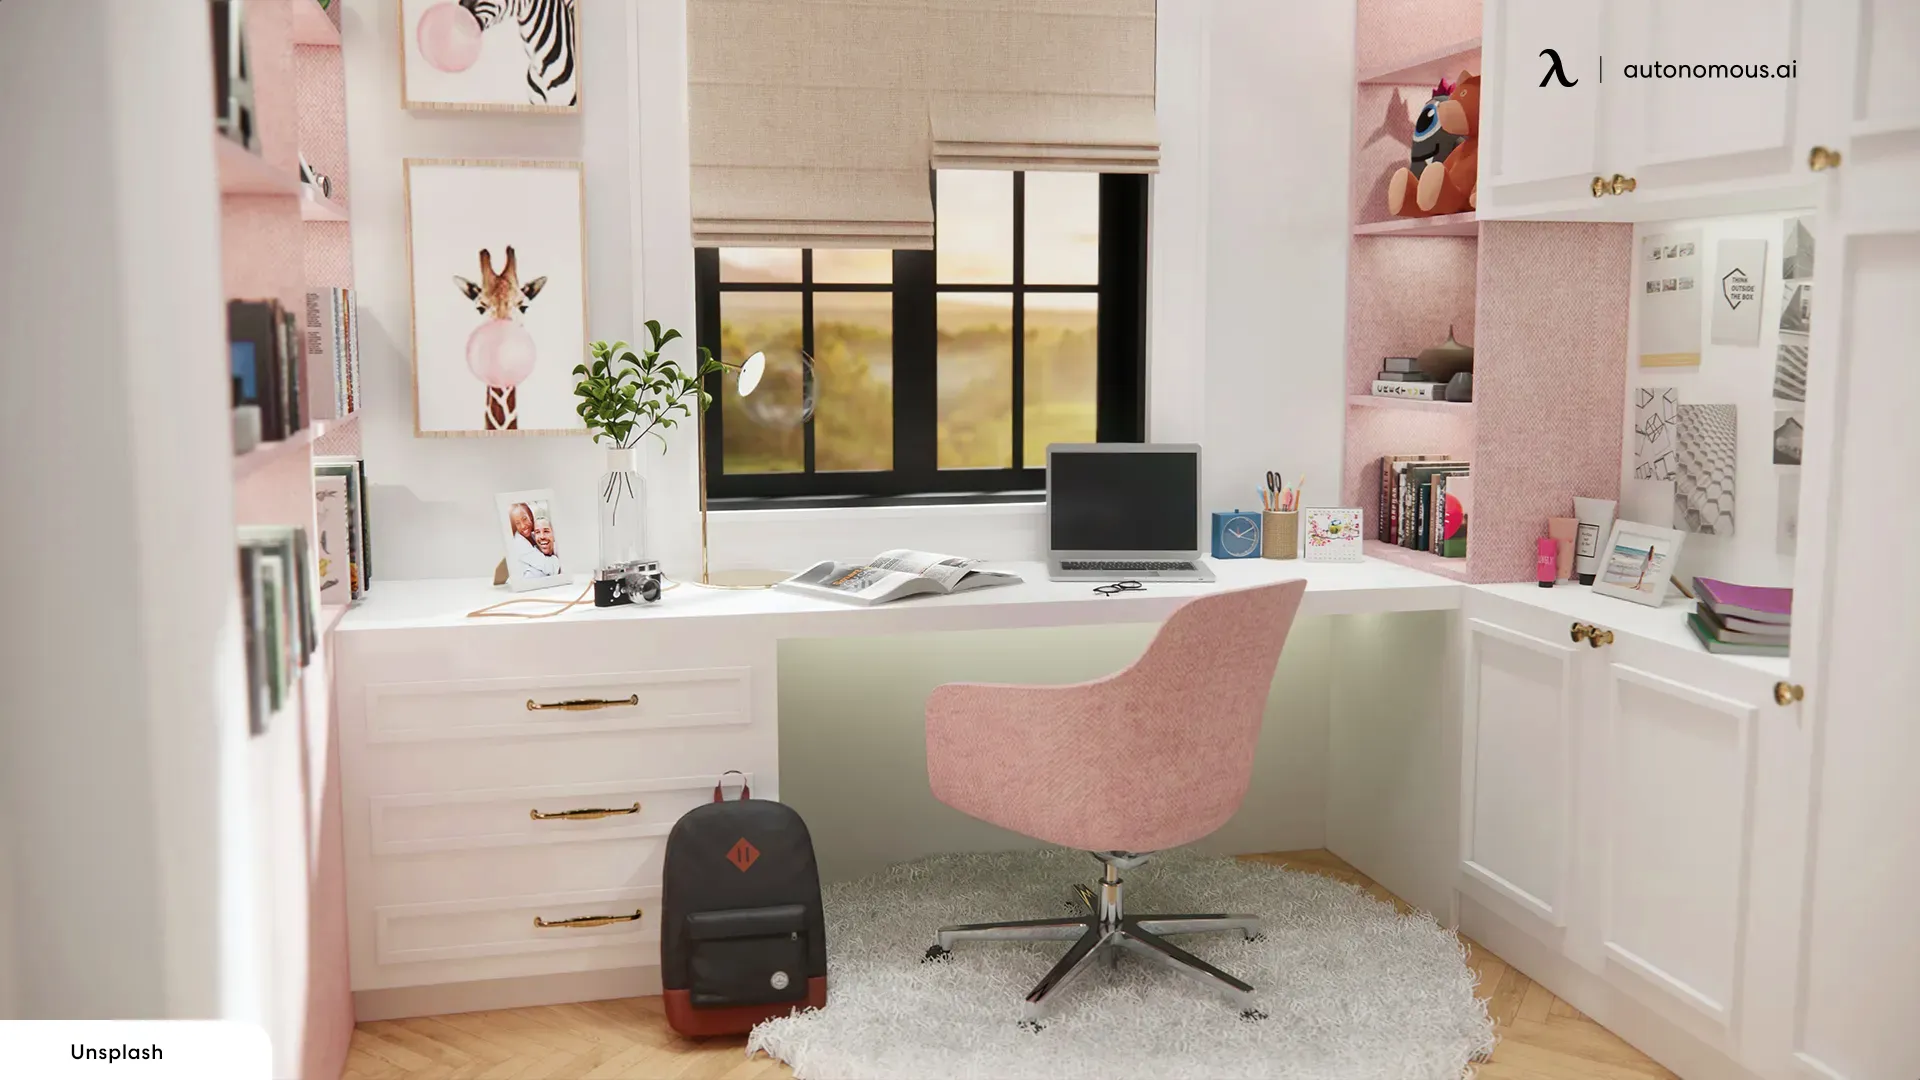 Pretty Peachy cute office decor